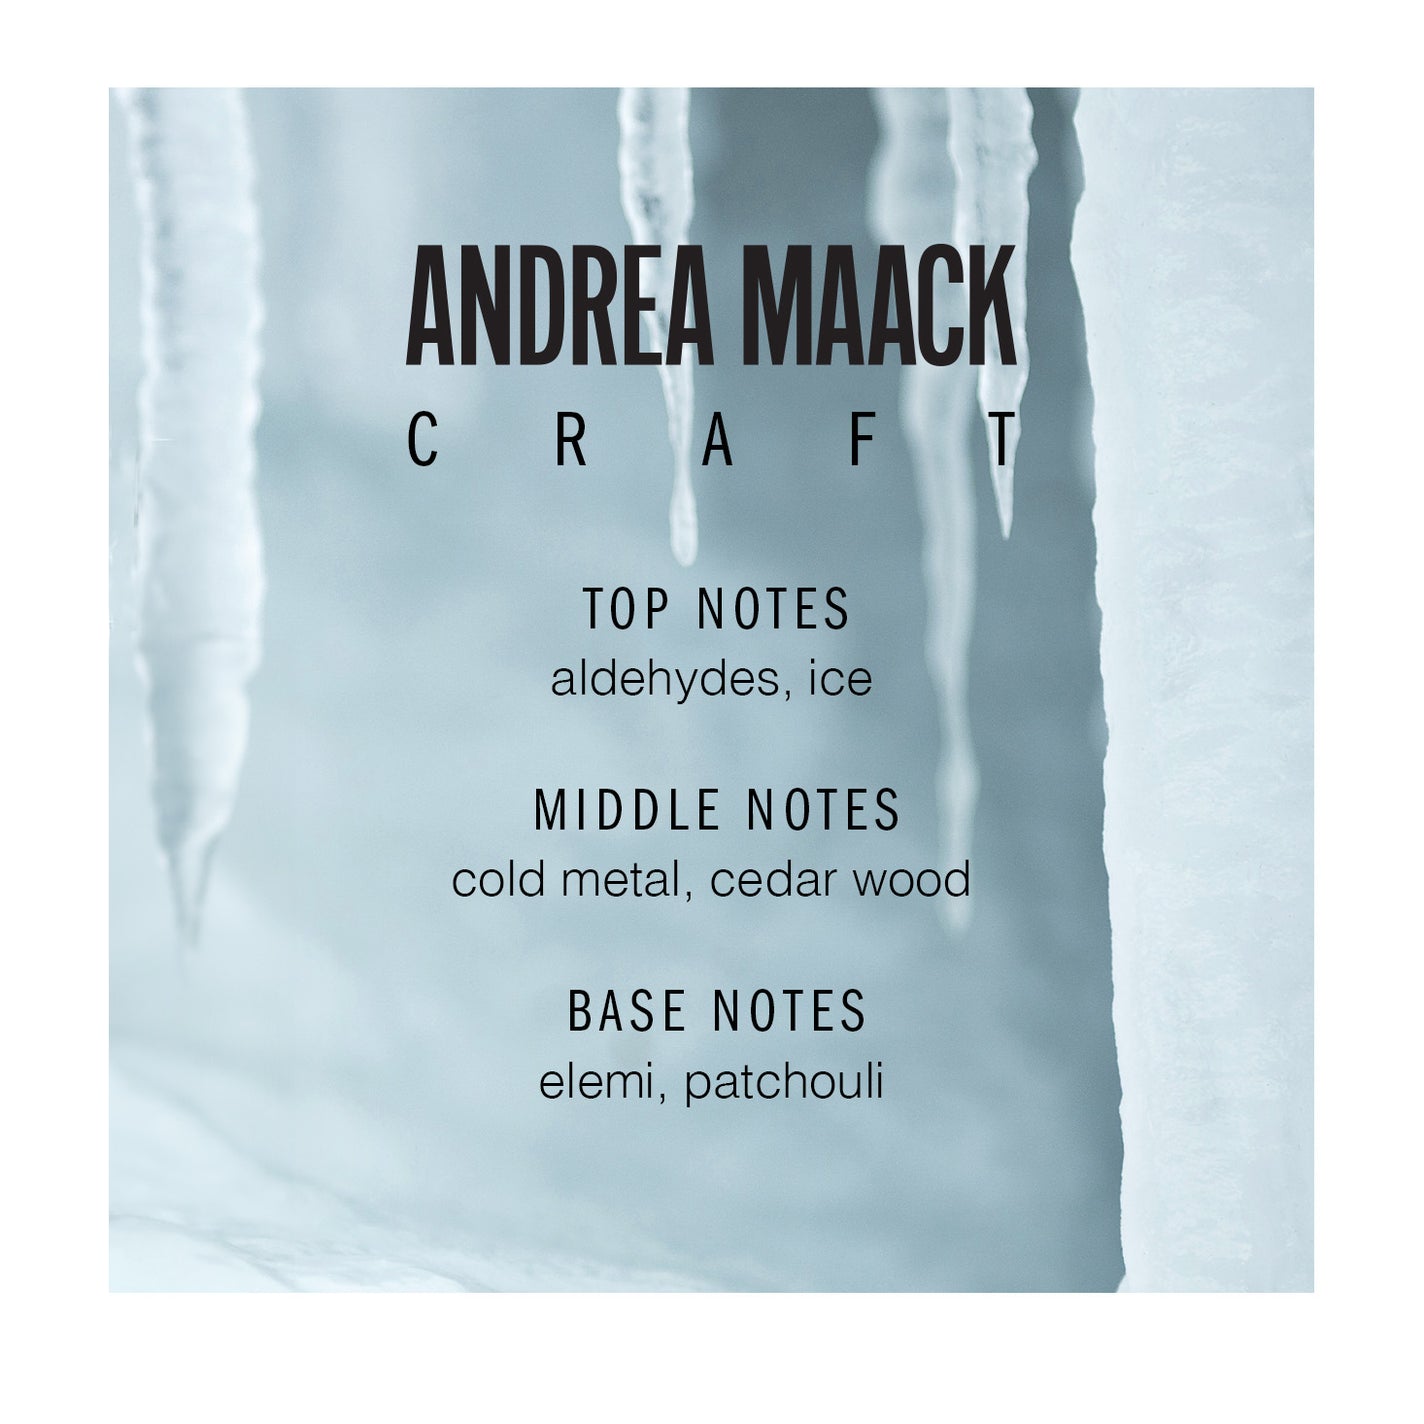 Andrea Maack Craft Eau de Parfum - 50ml